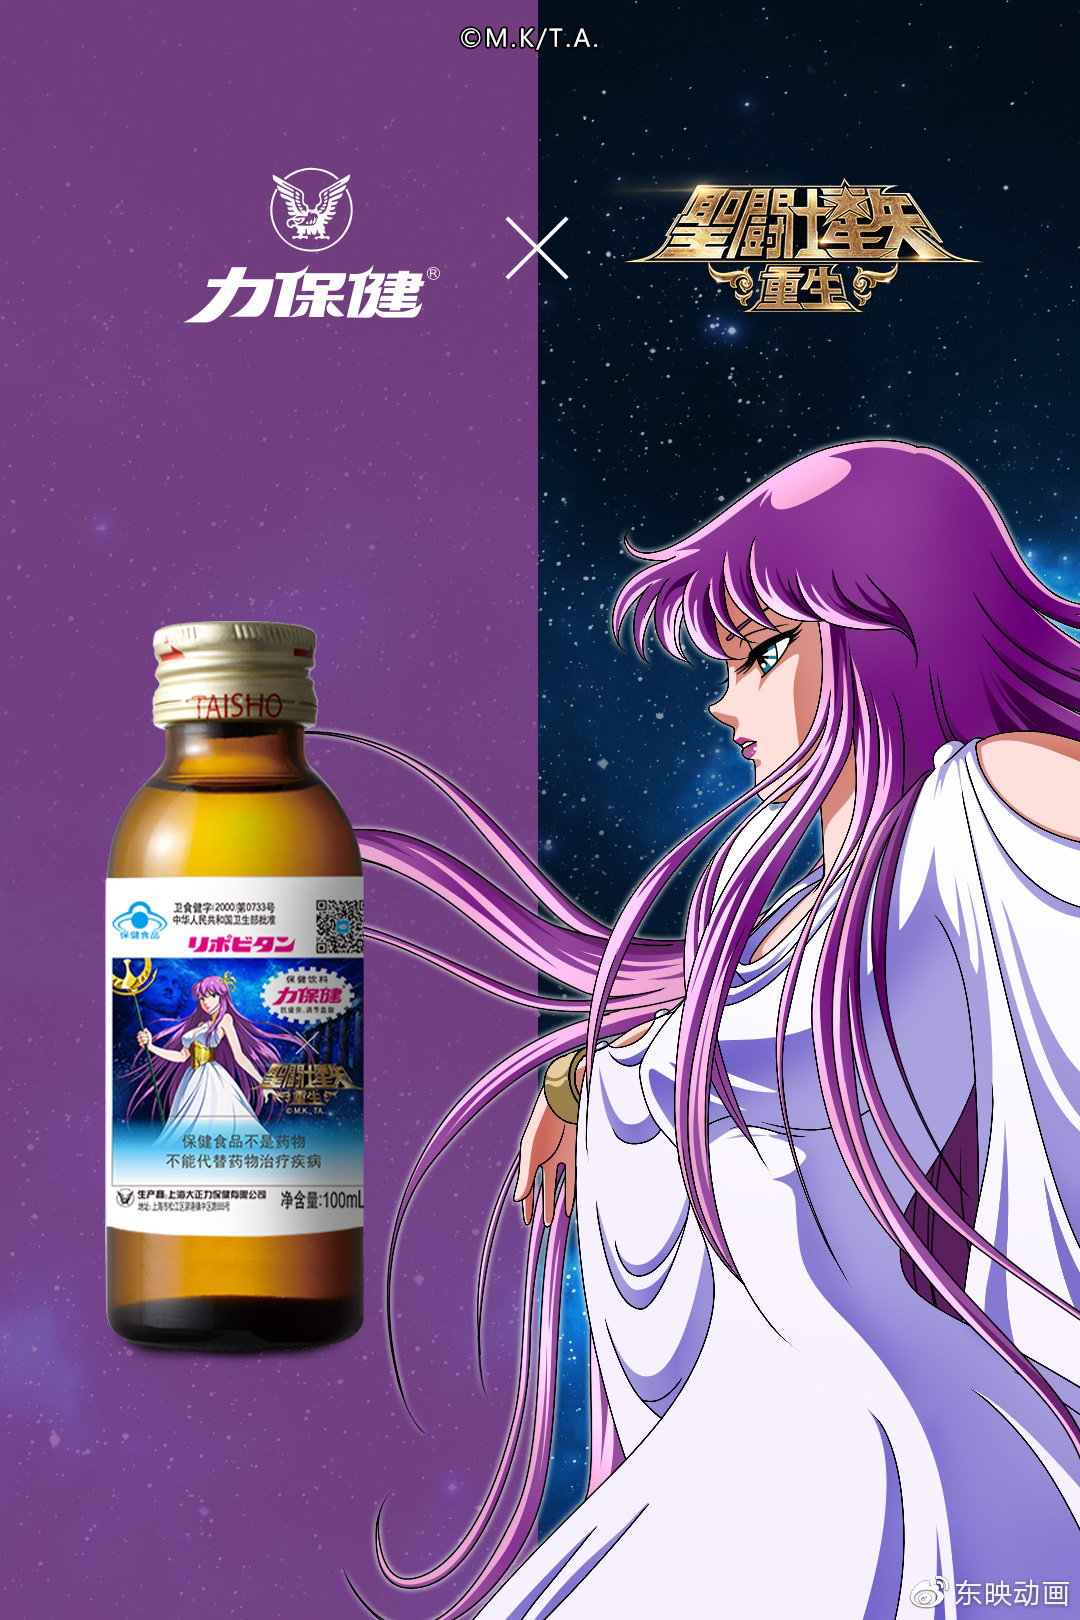 Uísque: bebida tematizada com o Saga de Gêmeos será lançada no Japão! - Os  Cavaleiros do Zodíaco - CavZodiaco.com.br